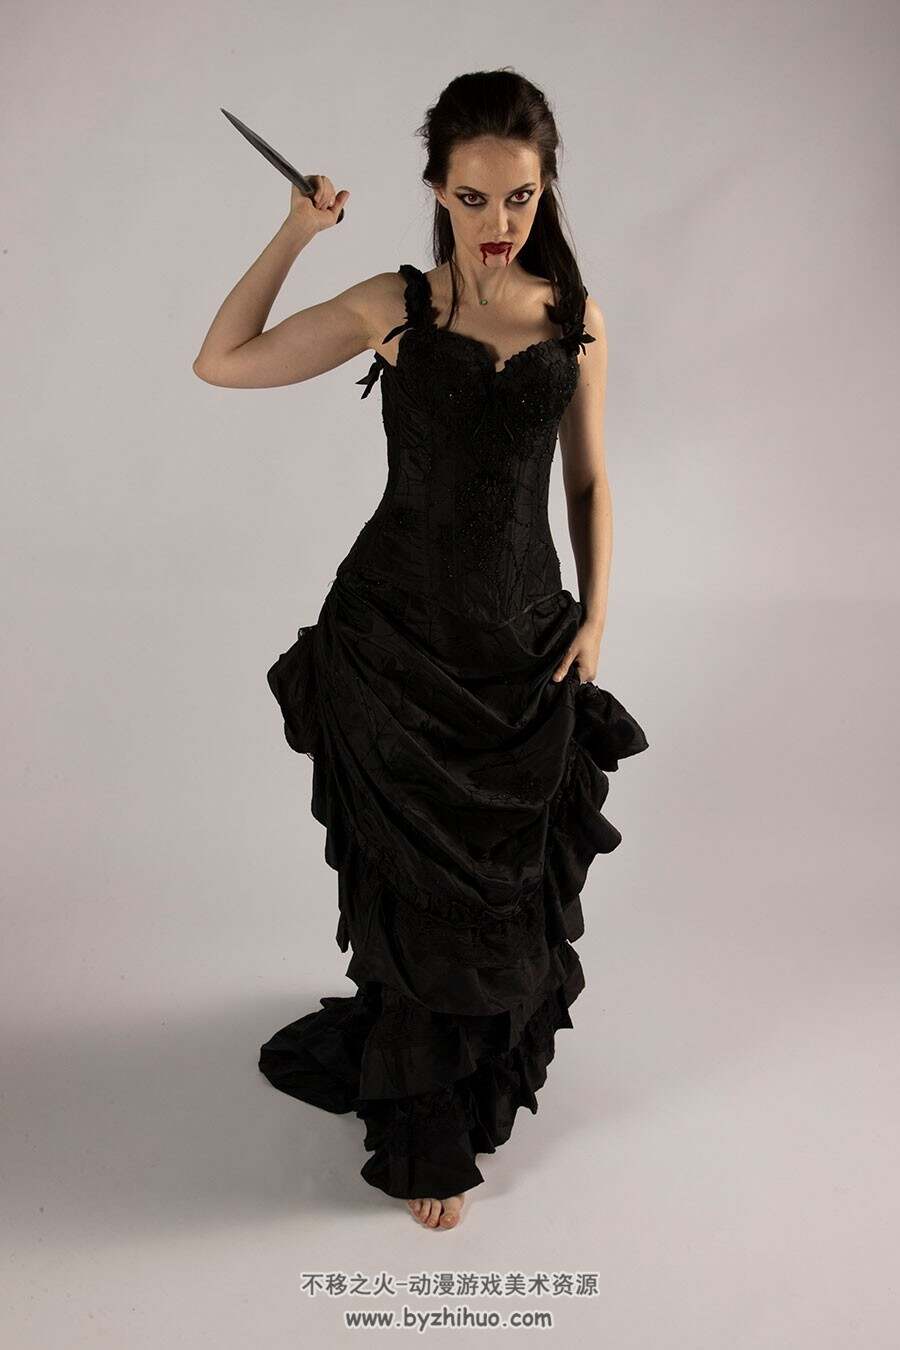 哥特式吸血鬼女性写真 黑色裙装图包 百度网盘下载 545P